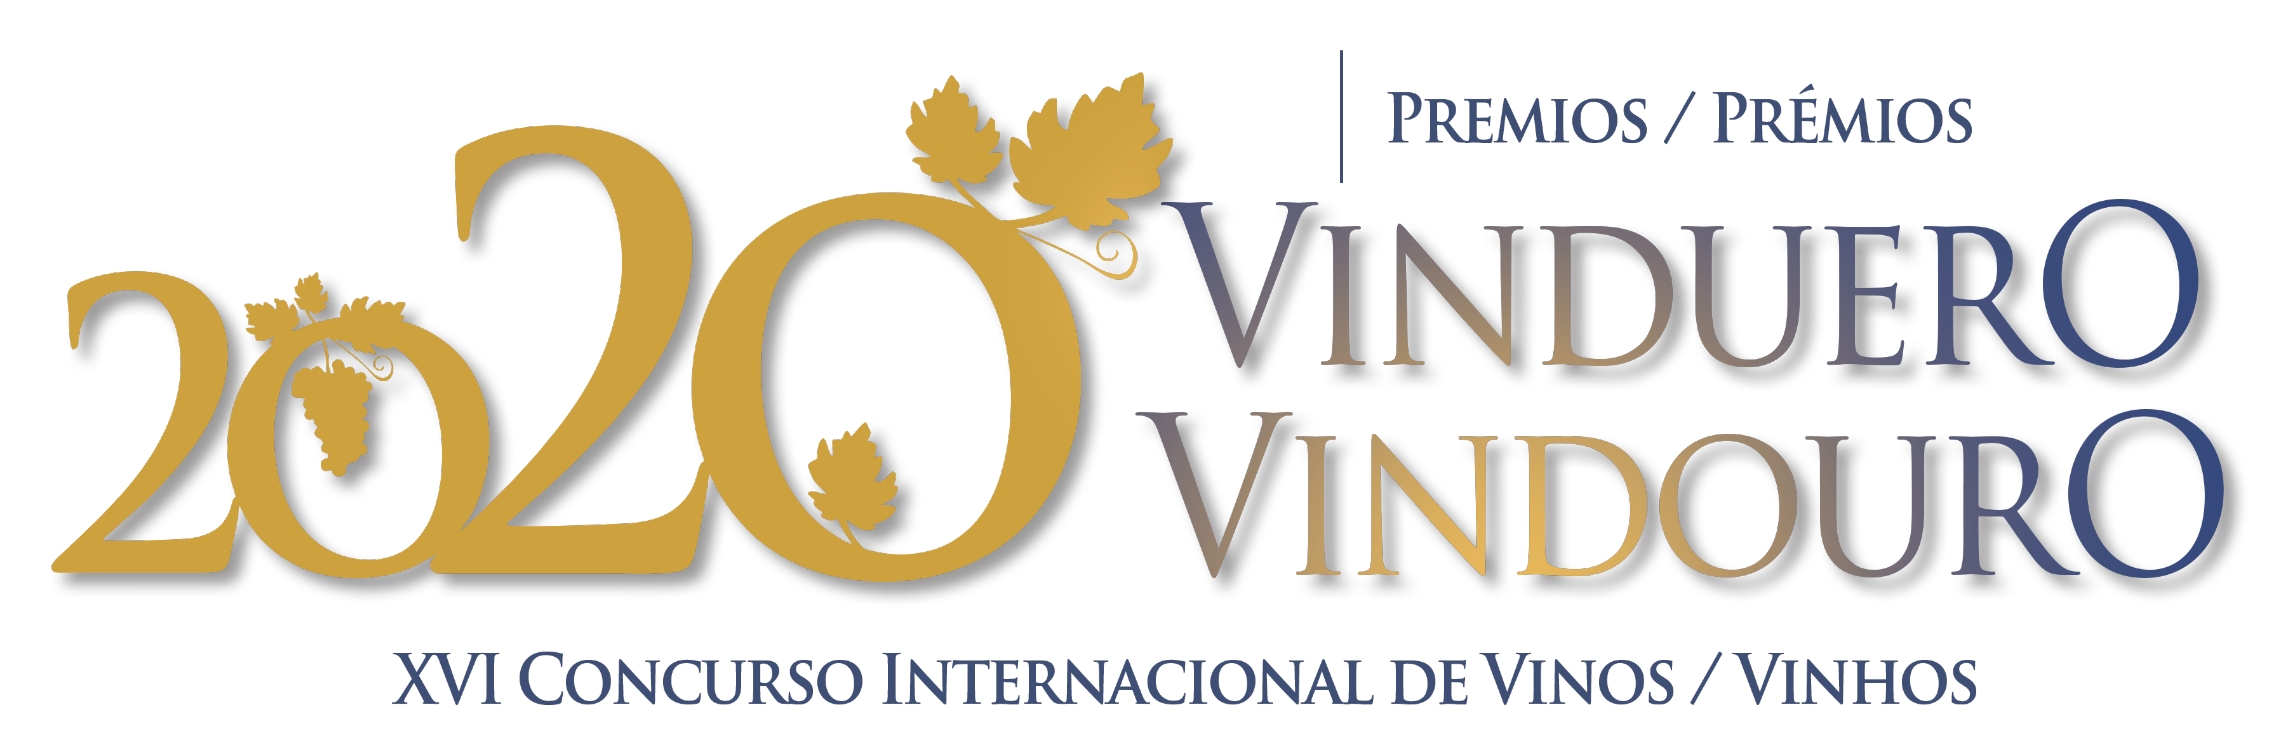 VinDuero-VinDouro prolonga o prazo de inscrição no Concurso